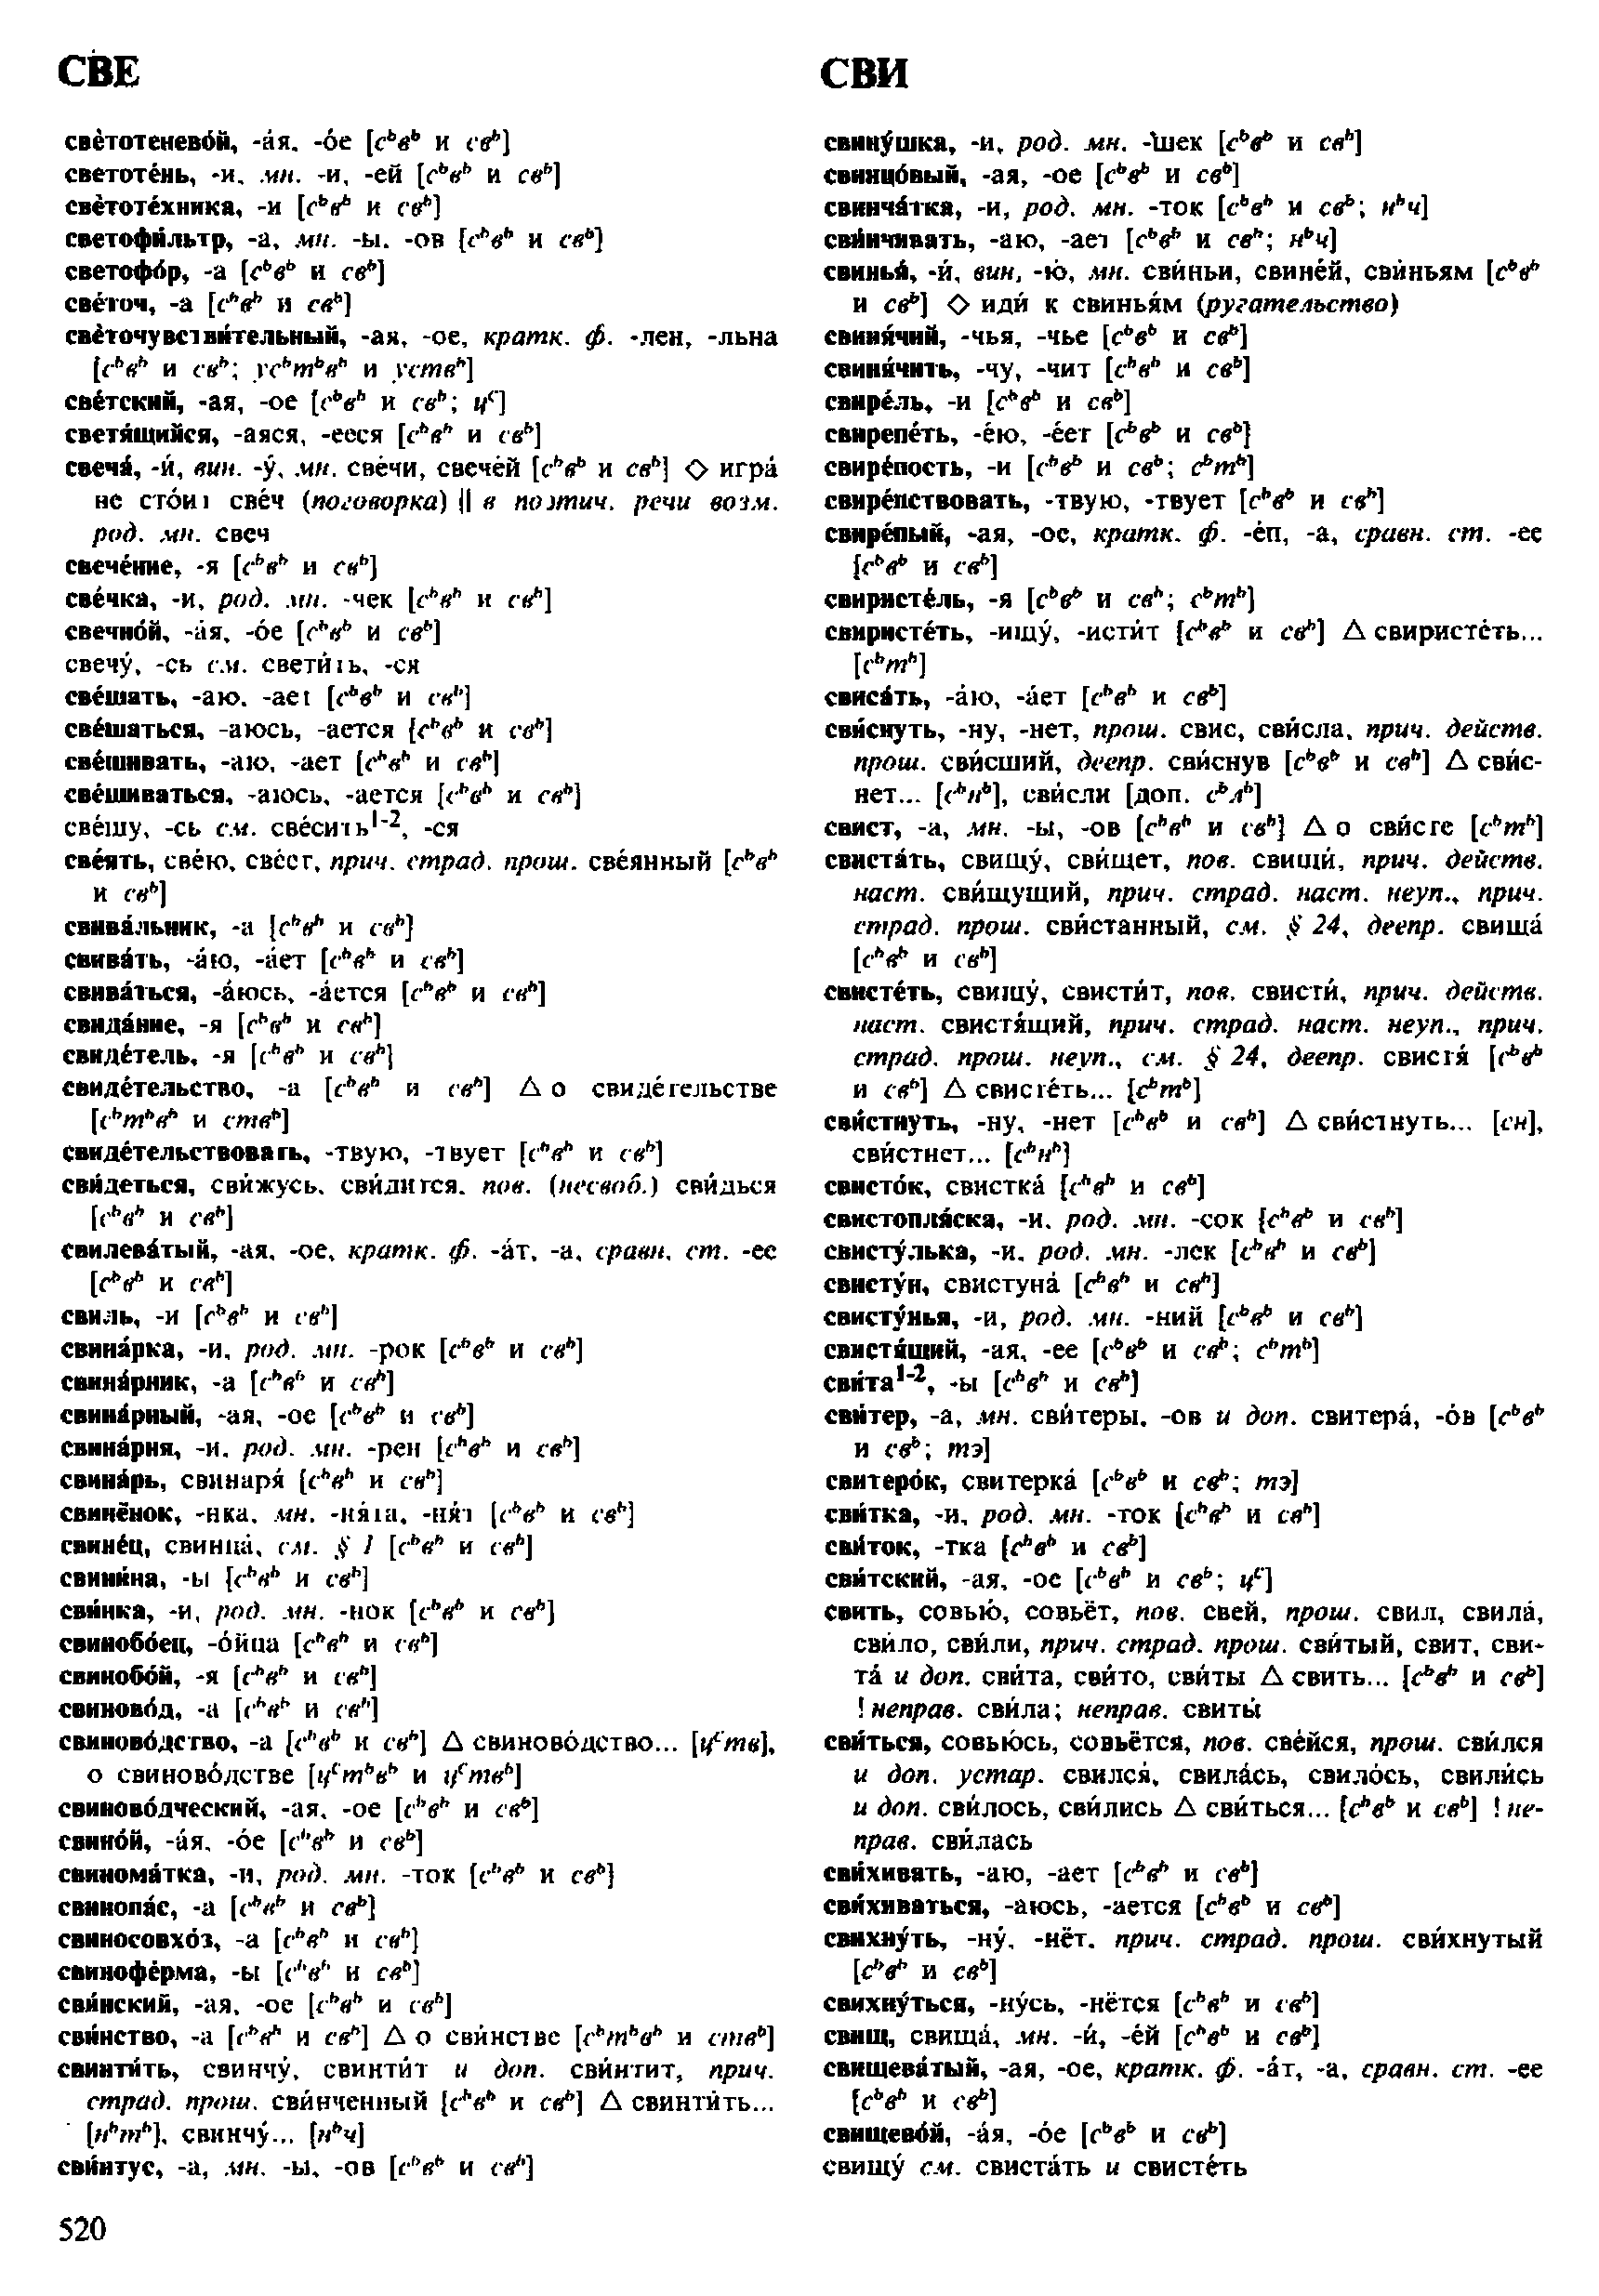 Фотокопия pdf / скан страницы 520 орфоэпического словаря под редакцией Аванесова (4 издание, 1988 год)